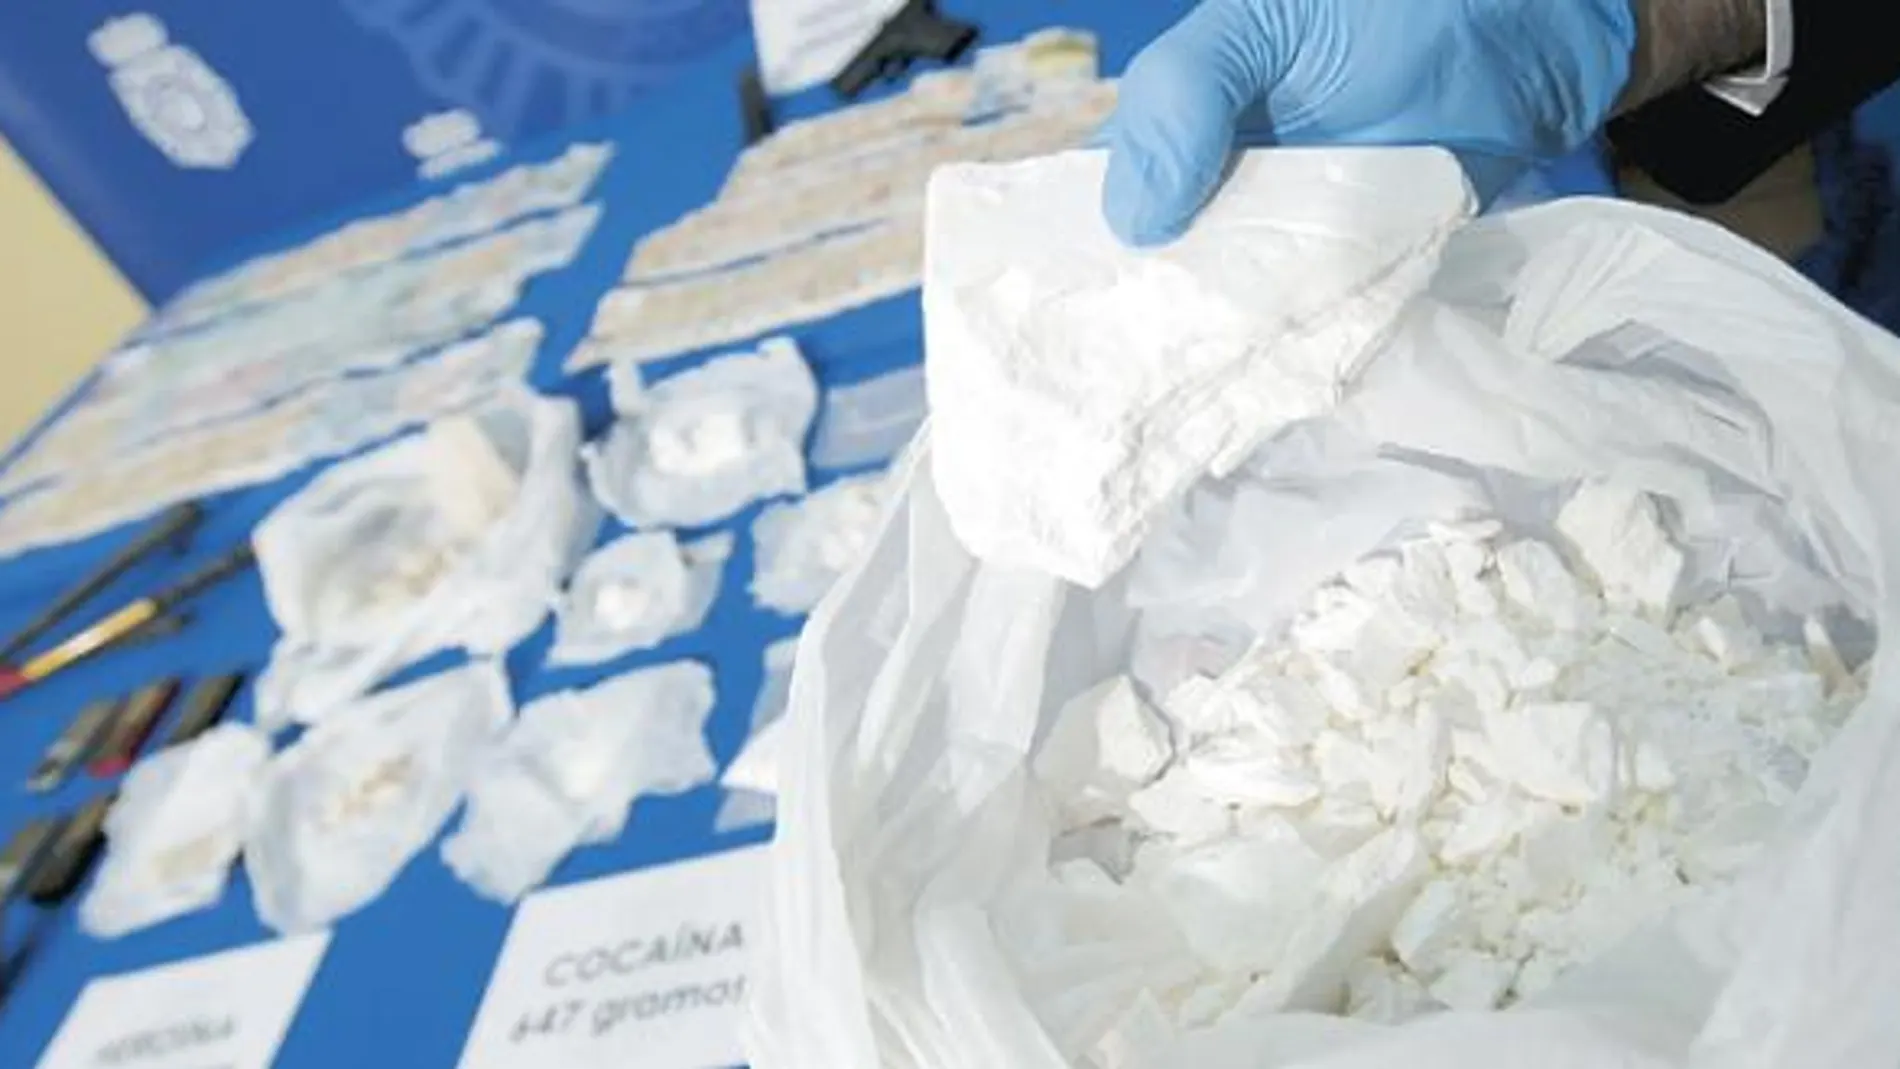 Cada operación contra el narcotráfico aumenta los problemas de almacenaje de las autoridades